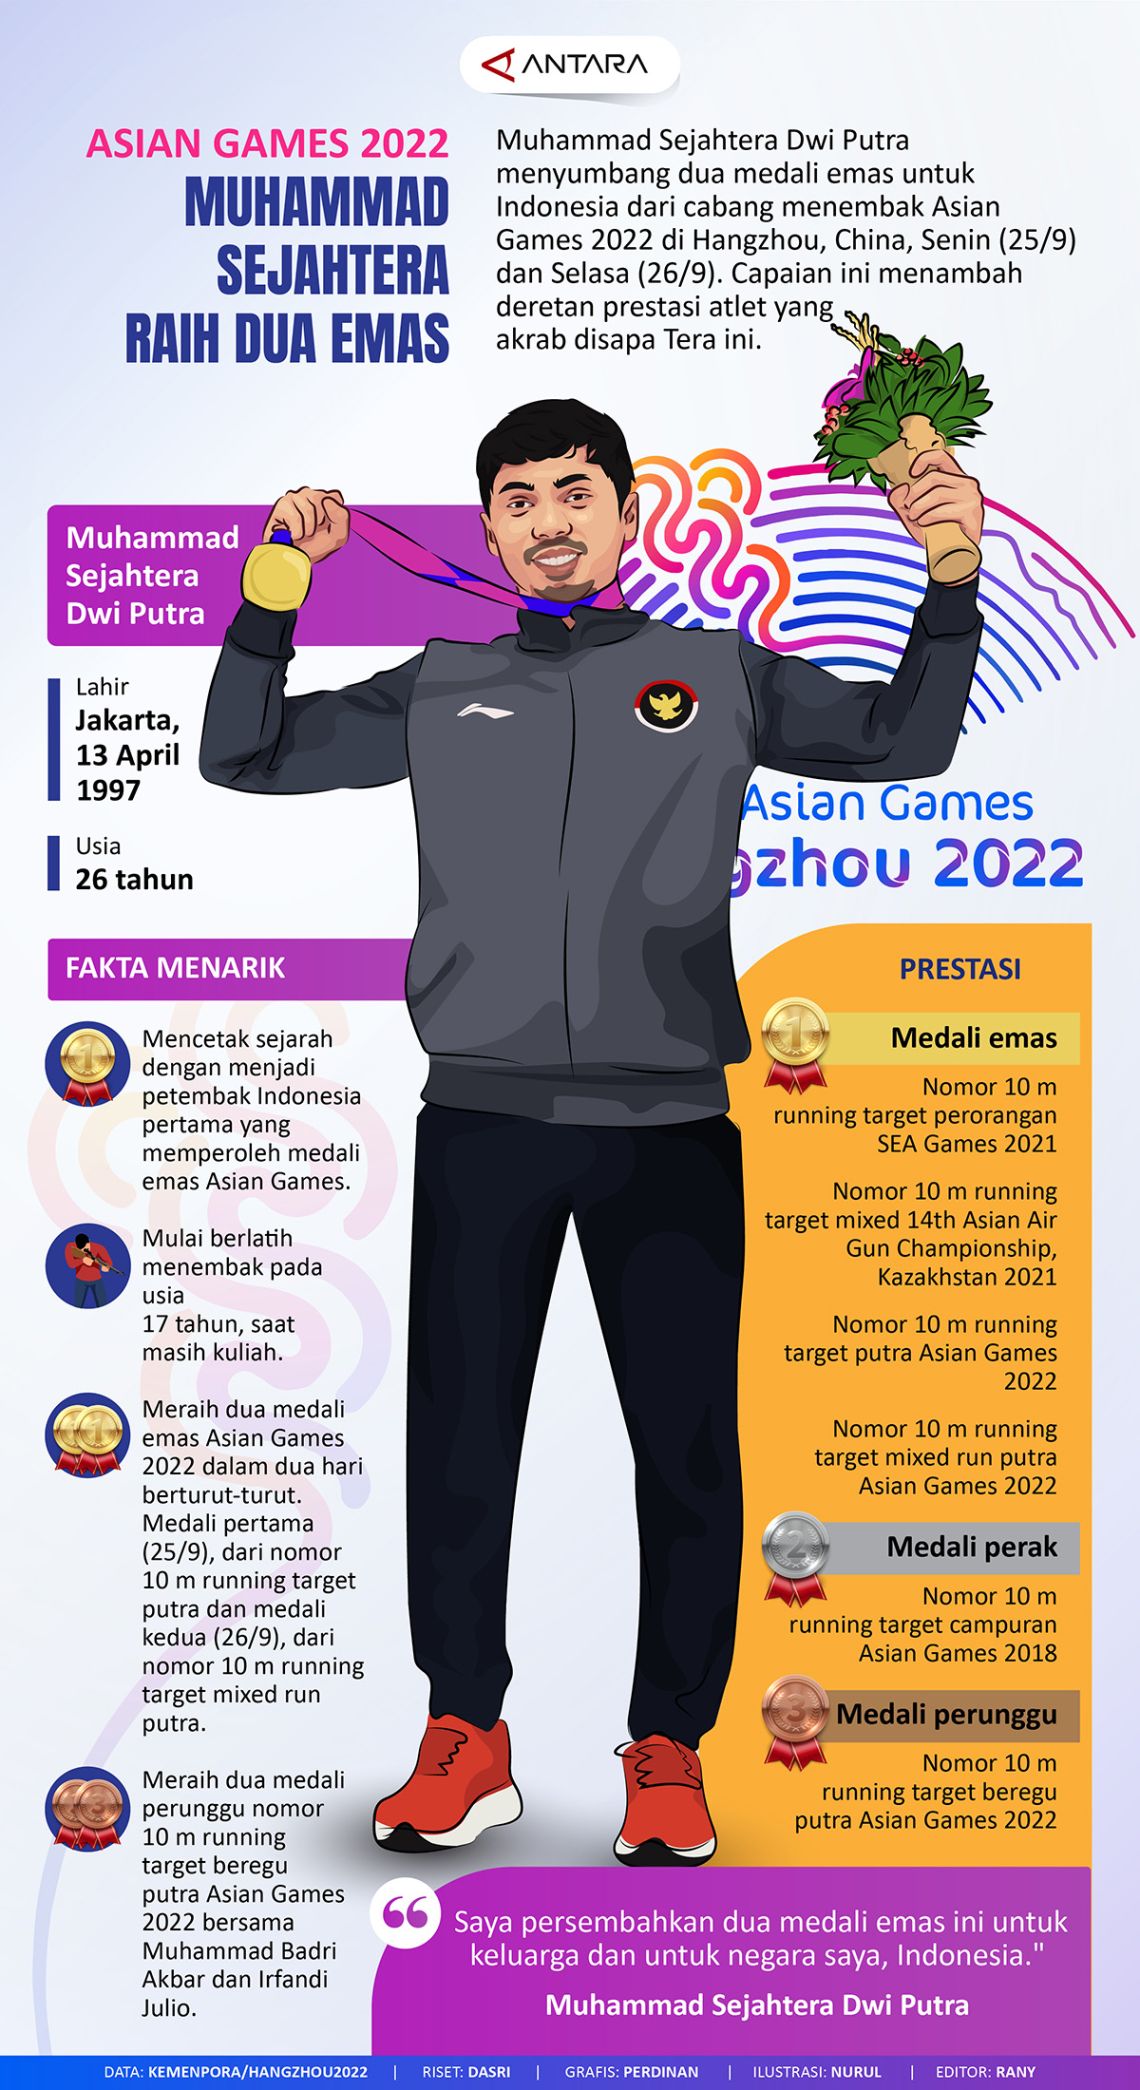 Asian Games 2022: Muhammad Sejahtera raih dua emas